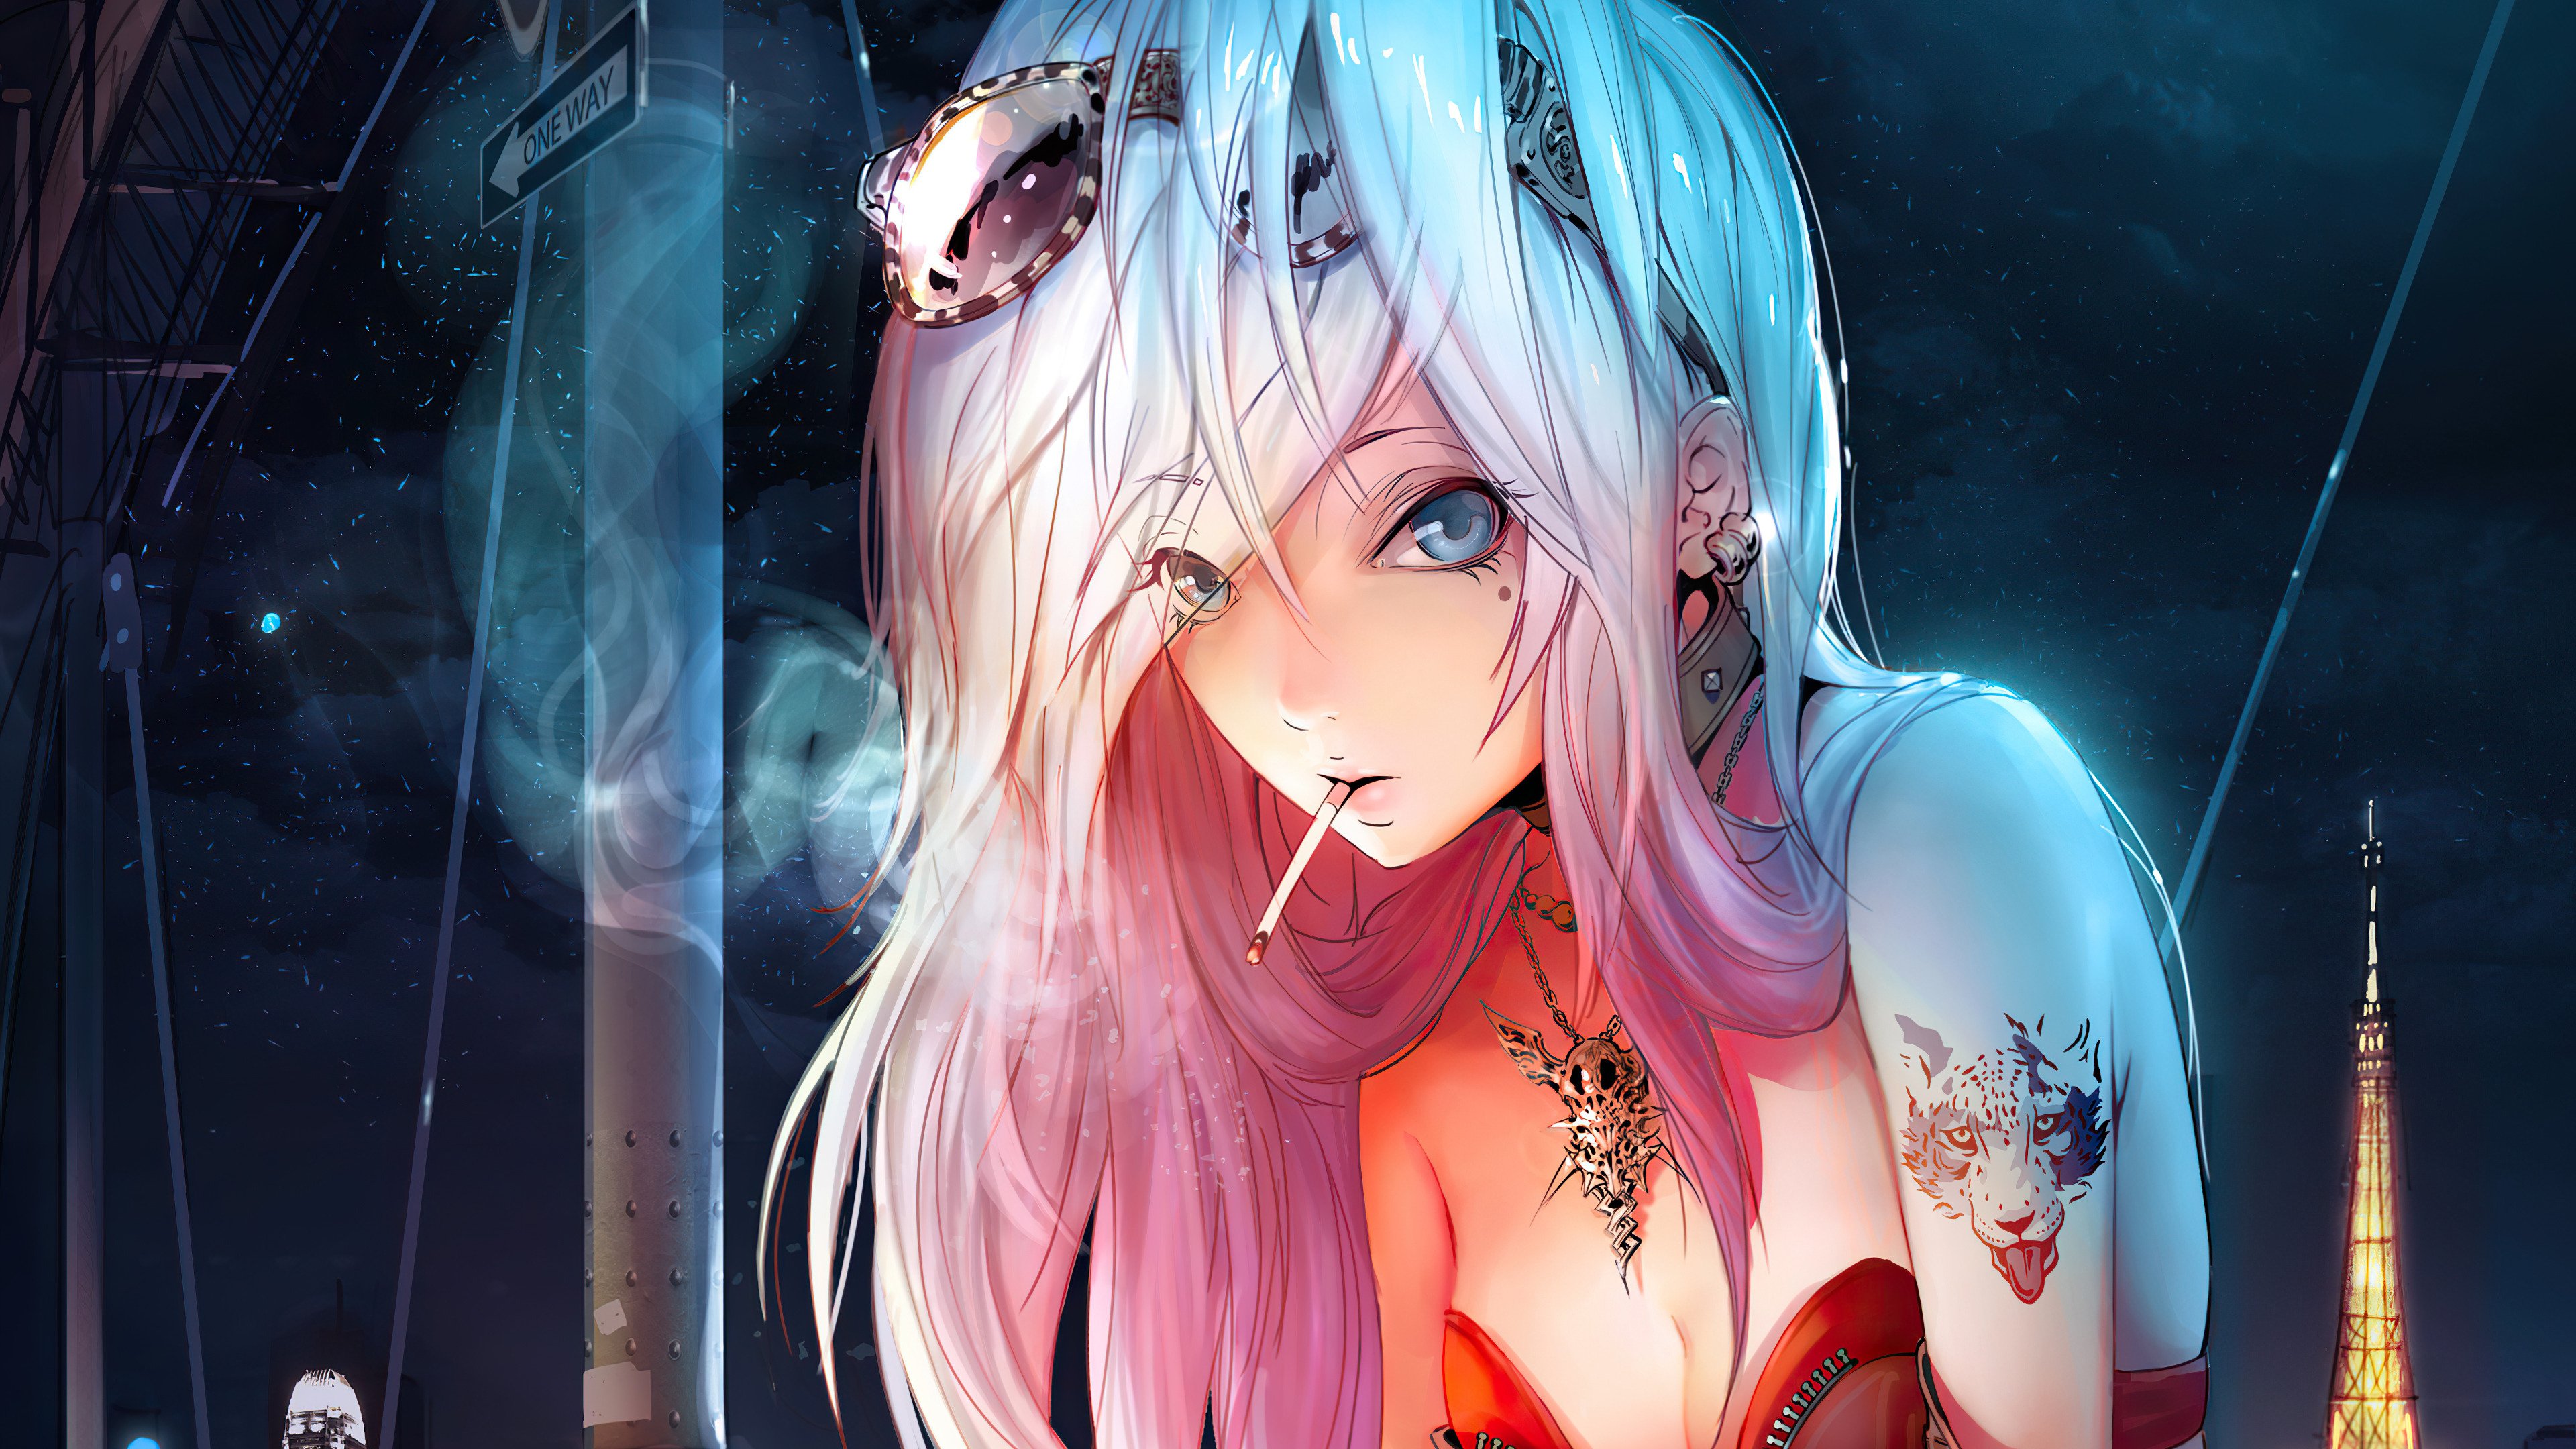 Fondos de pantalla Chica Anime fumando